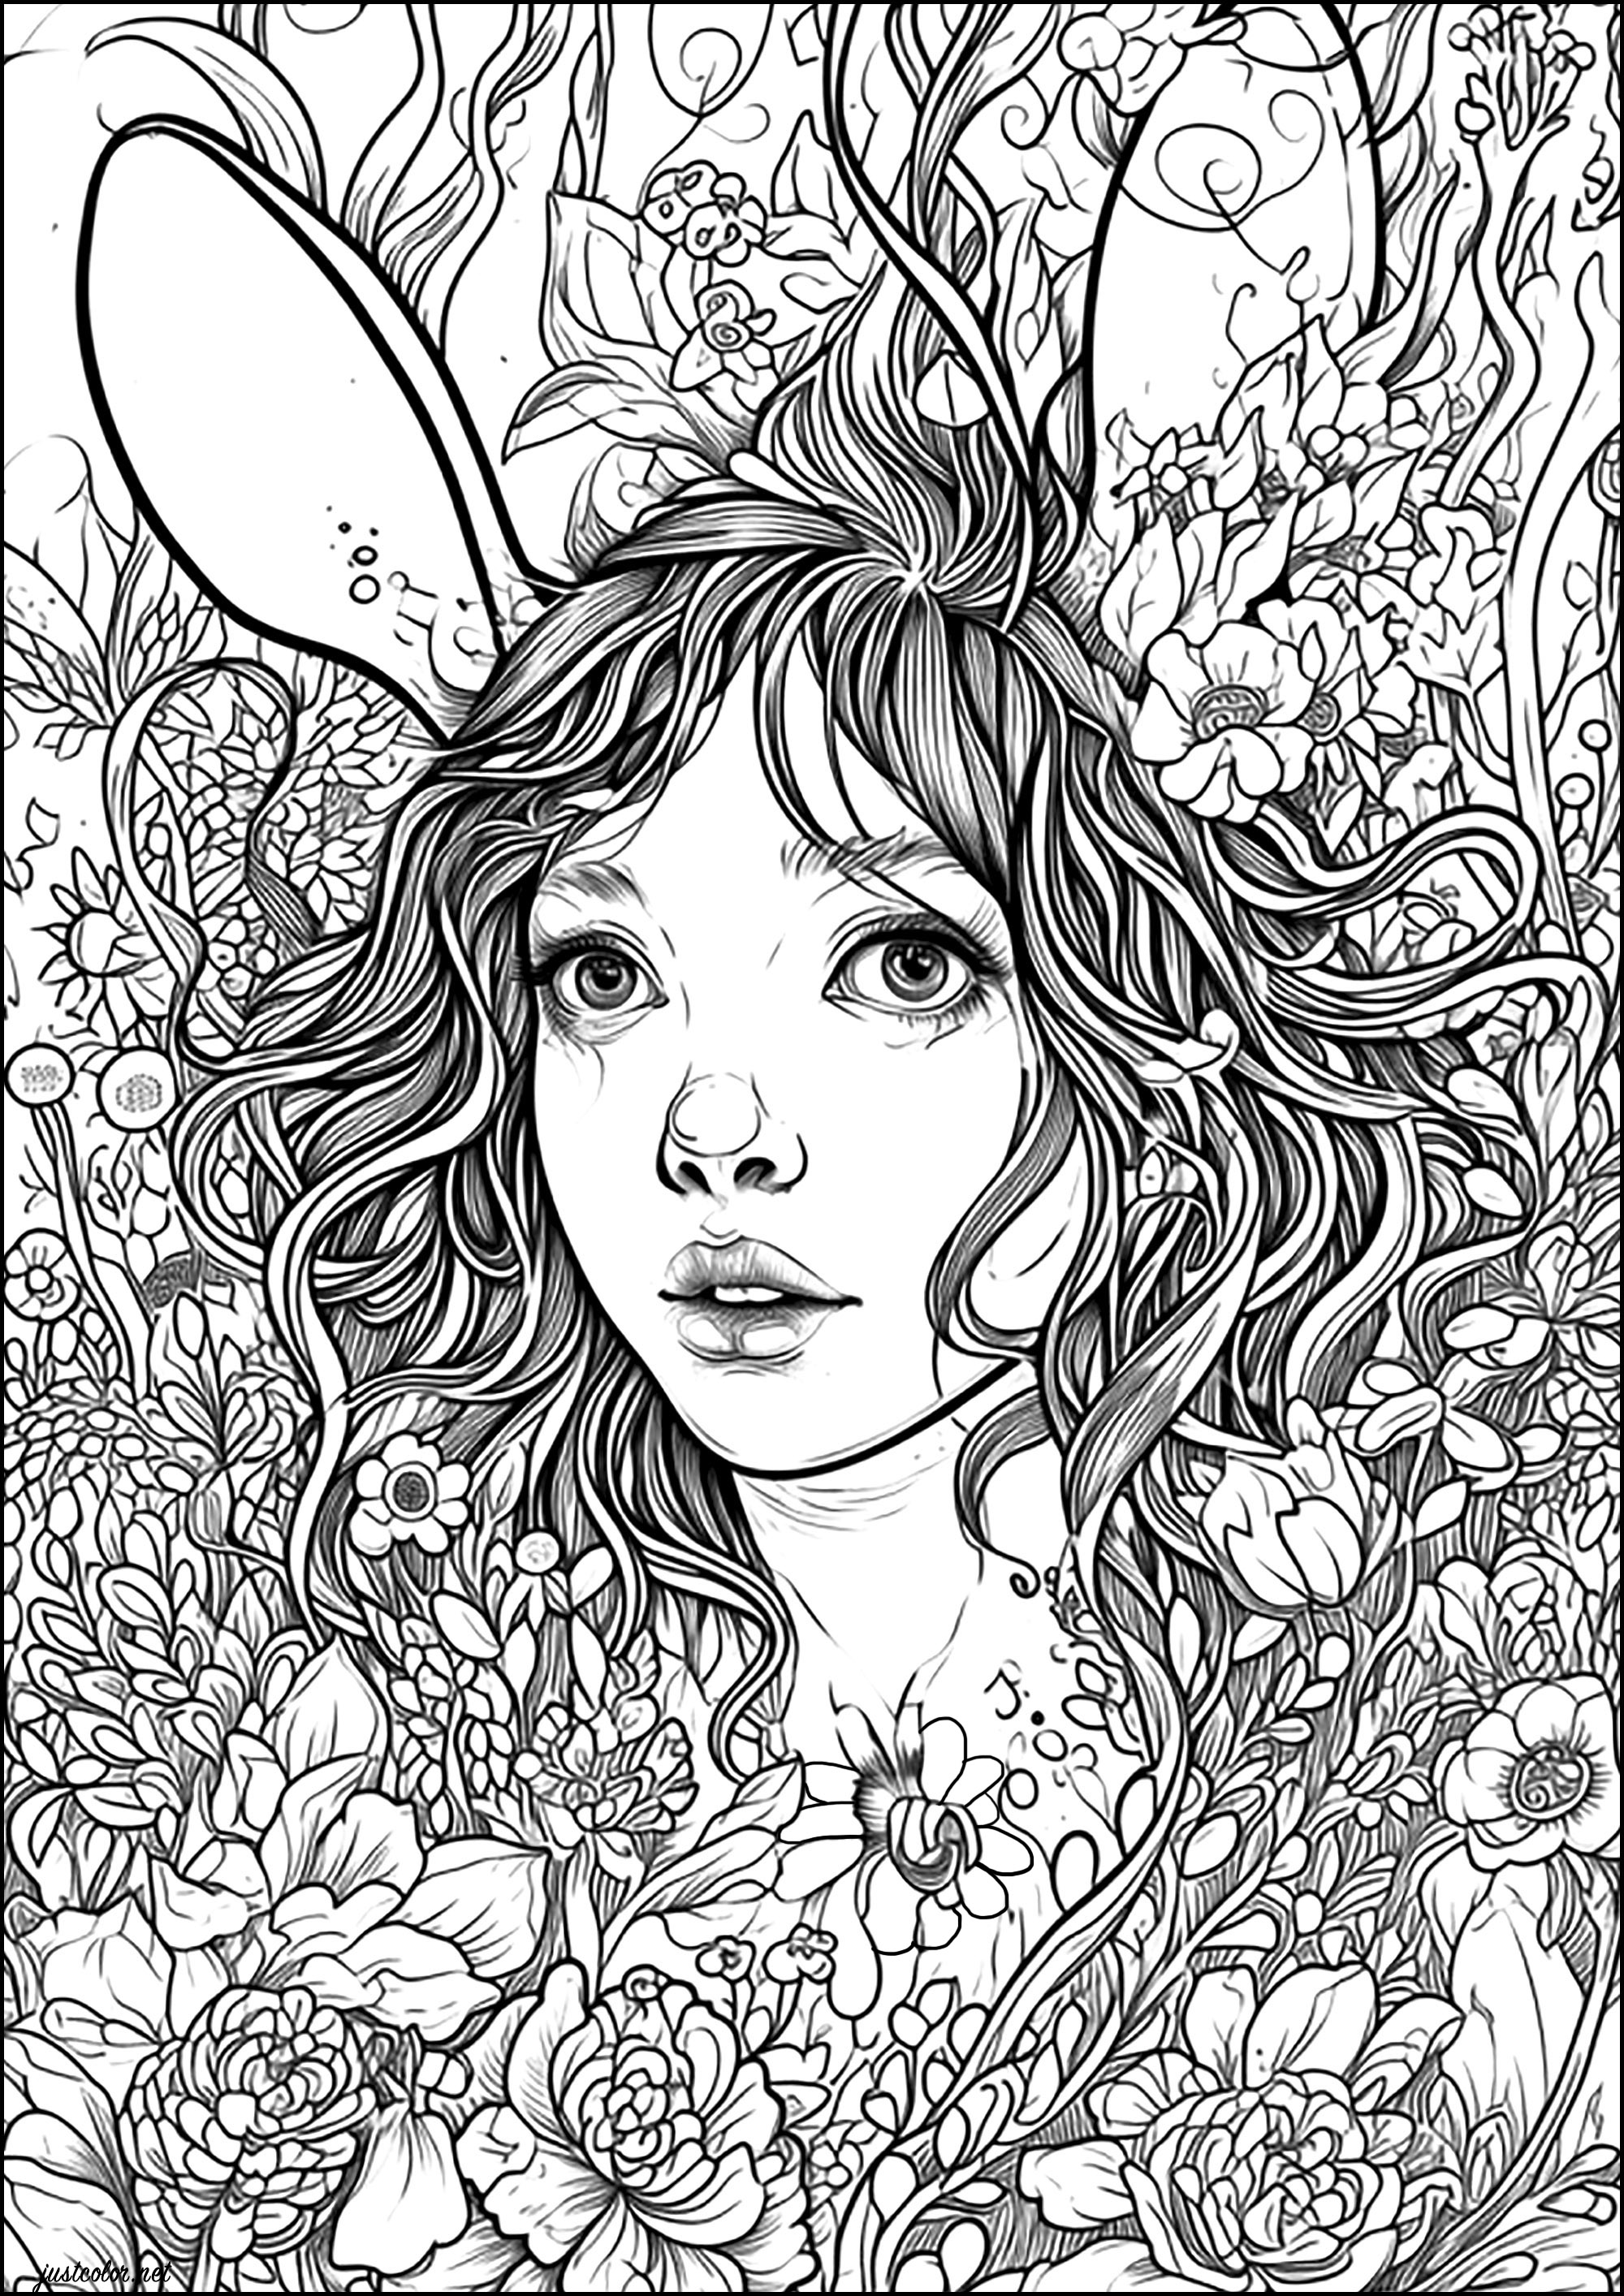 La donna coniglio. Un incantesimo trasforma questa giovane donna in un coniglio... Si nasconde tra i fiori, in attesa che qualcuno la salvi.